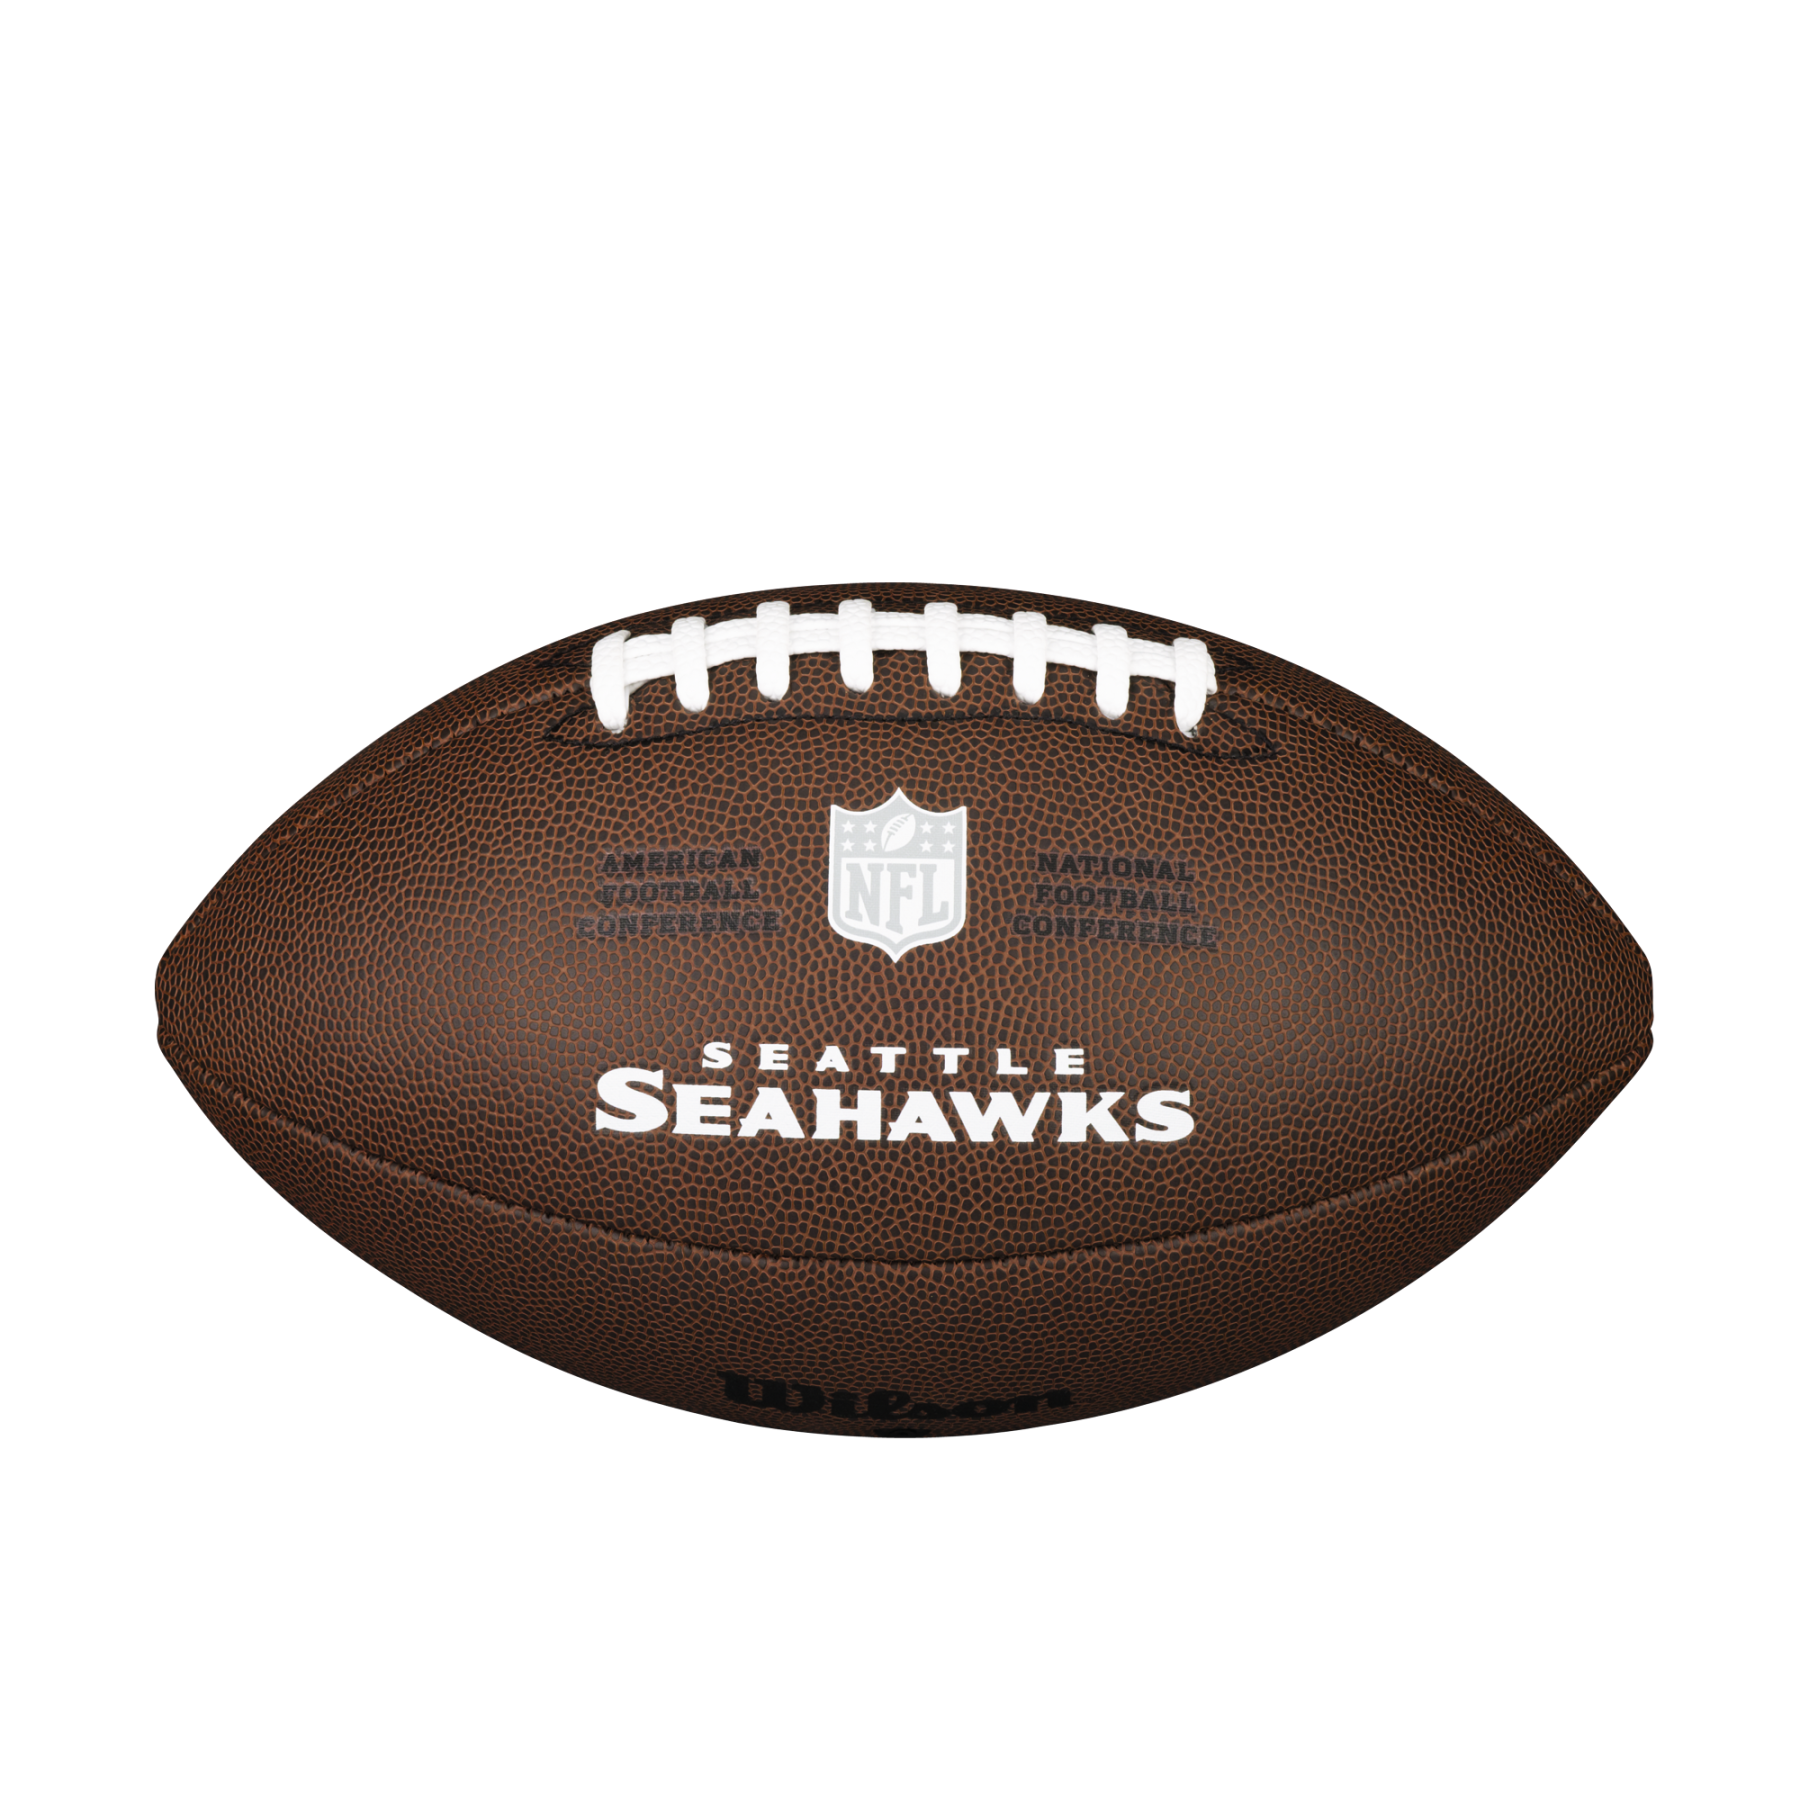 Ballong Wilson Seahawks NFL Licensed